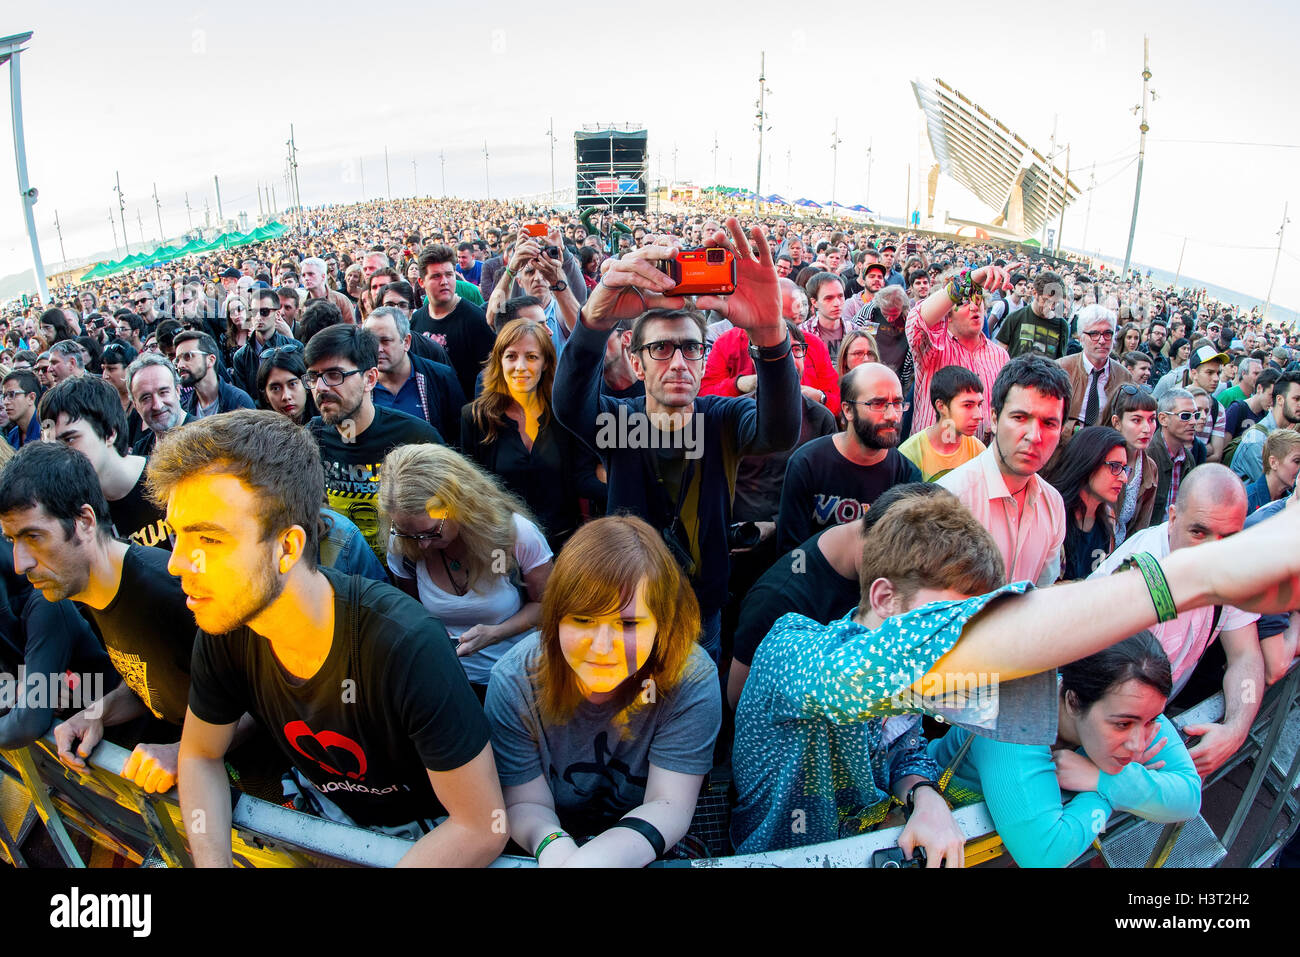 BARCELONA - 27 Mai: Crowd Uhr ein Konzert im Primavera Sound Festival 2015 am 27. Mai 2015 in Barcelona, Spanien. Stockfoto